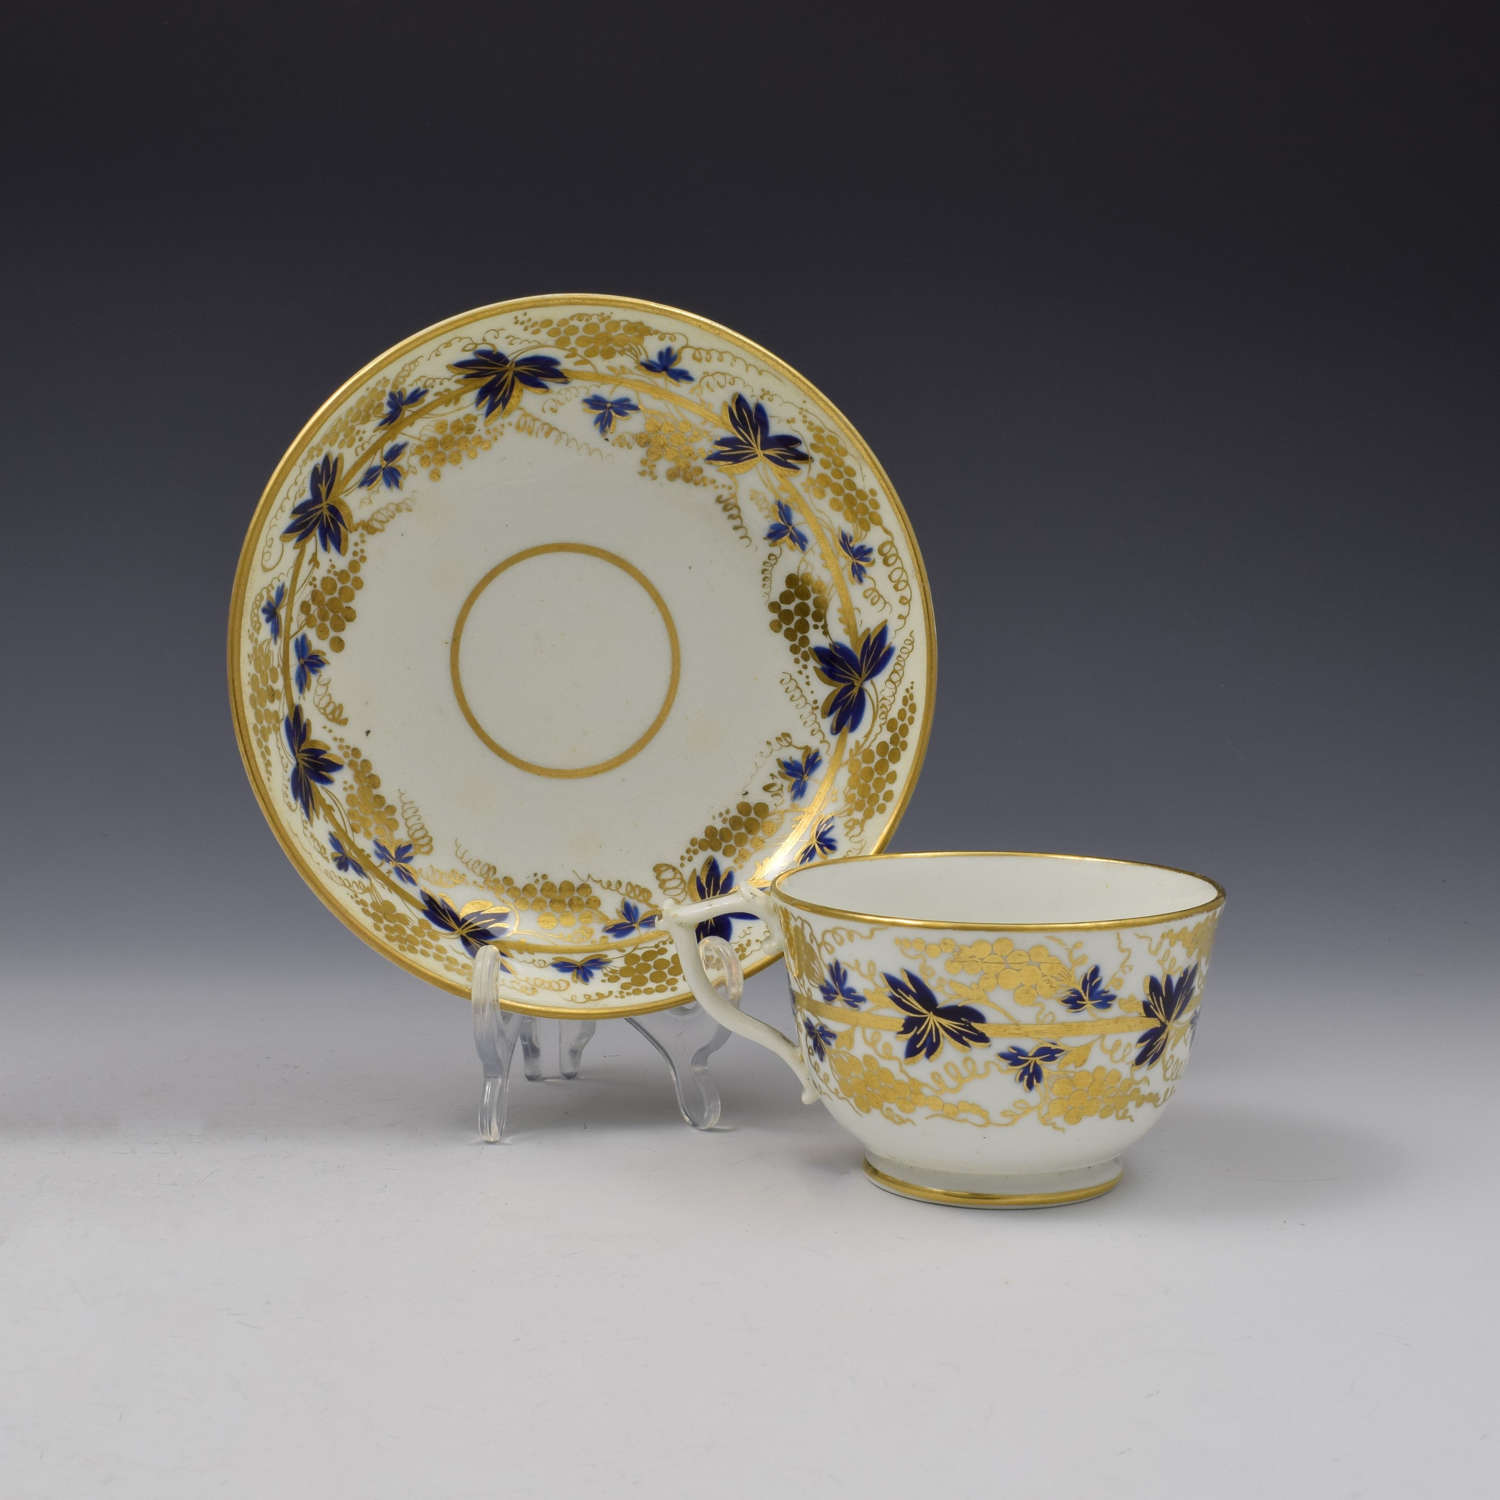 Bloor Derby Porcelain Tea Cup & Saucer c.1820